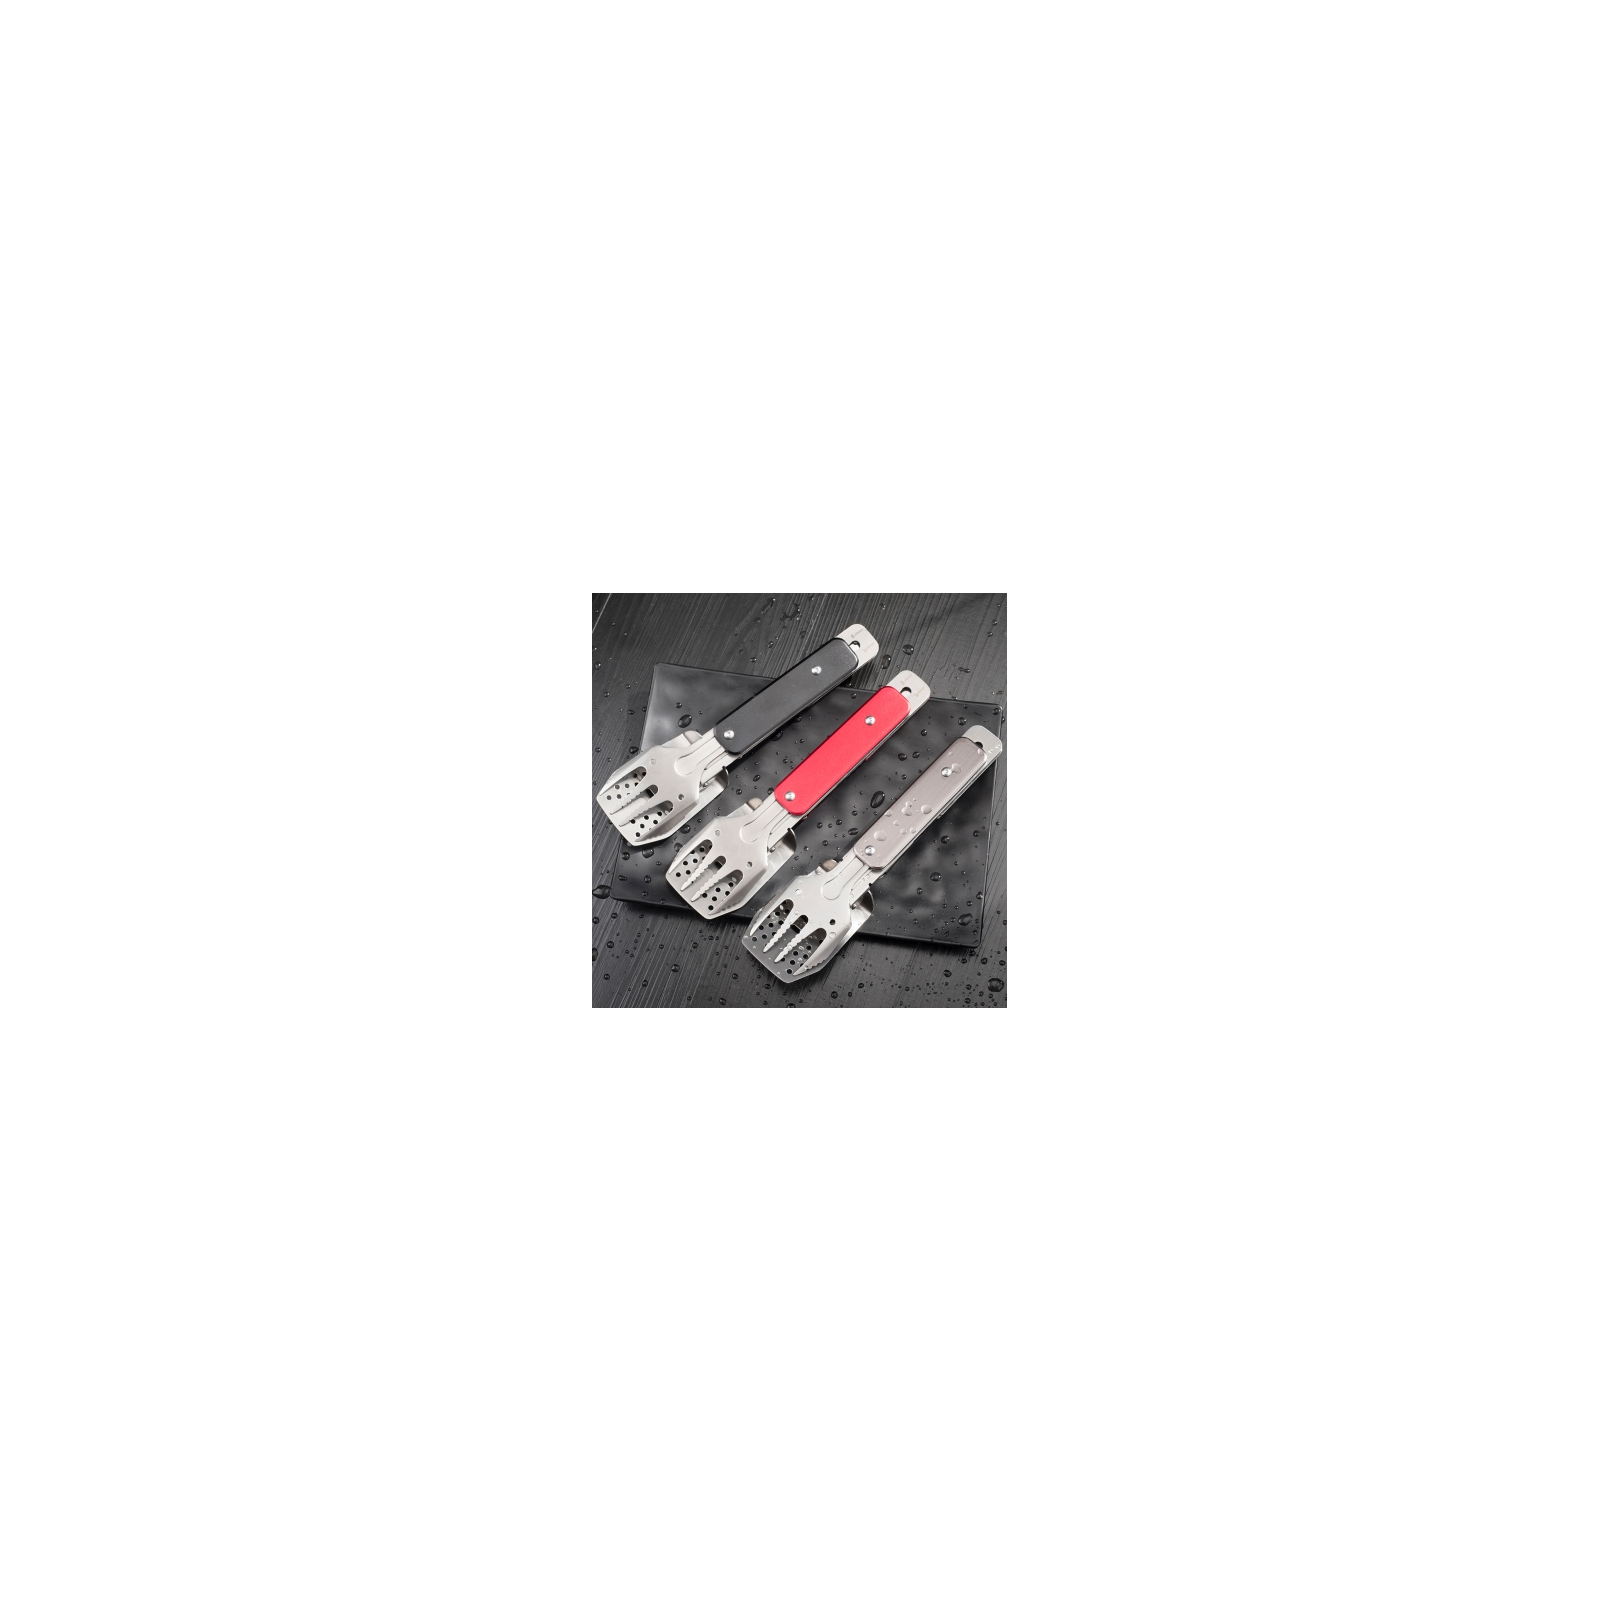 Мультитул Roxon мини набор для барбекю Grey (S602G) изображение 6